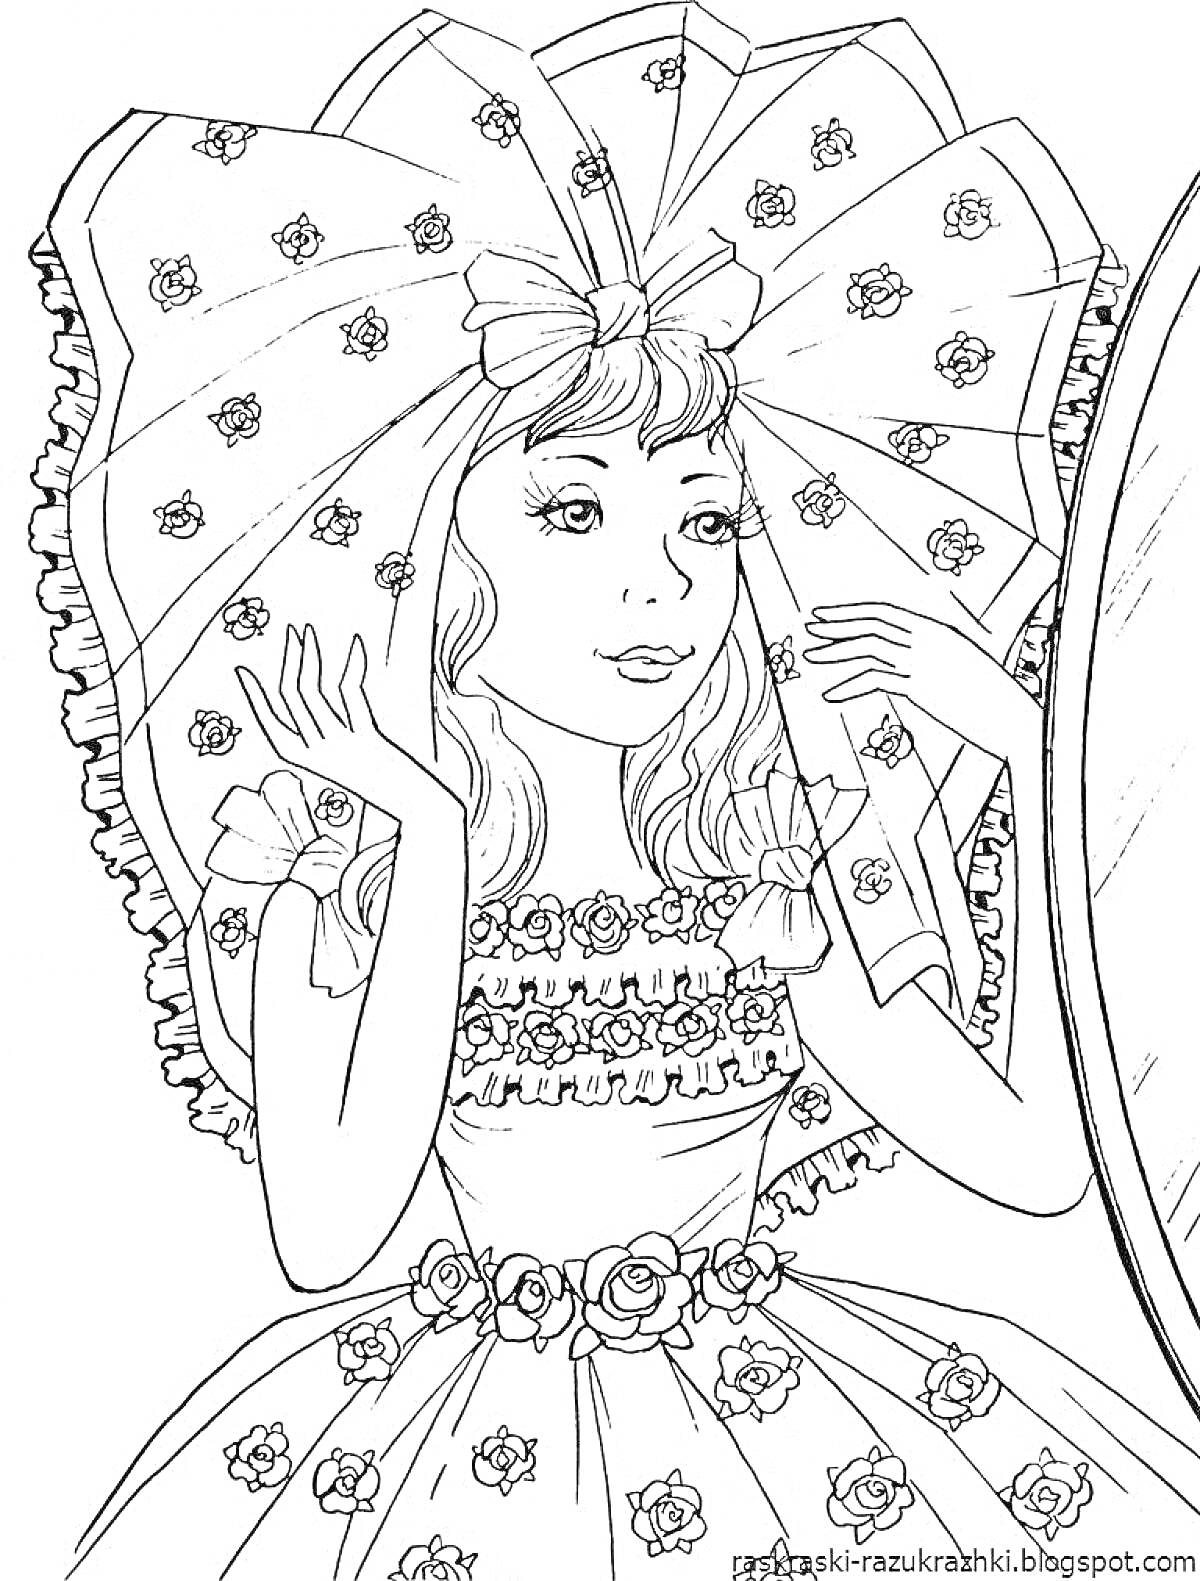 Раскраска Девочка в нарядном платье, с большим бантом на голове и цветочным узором